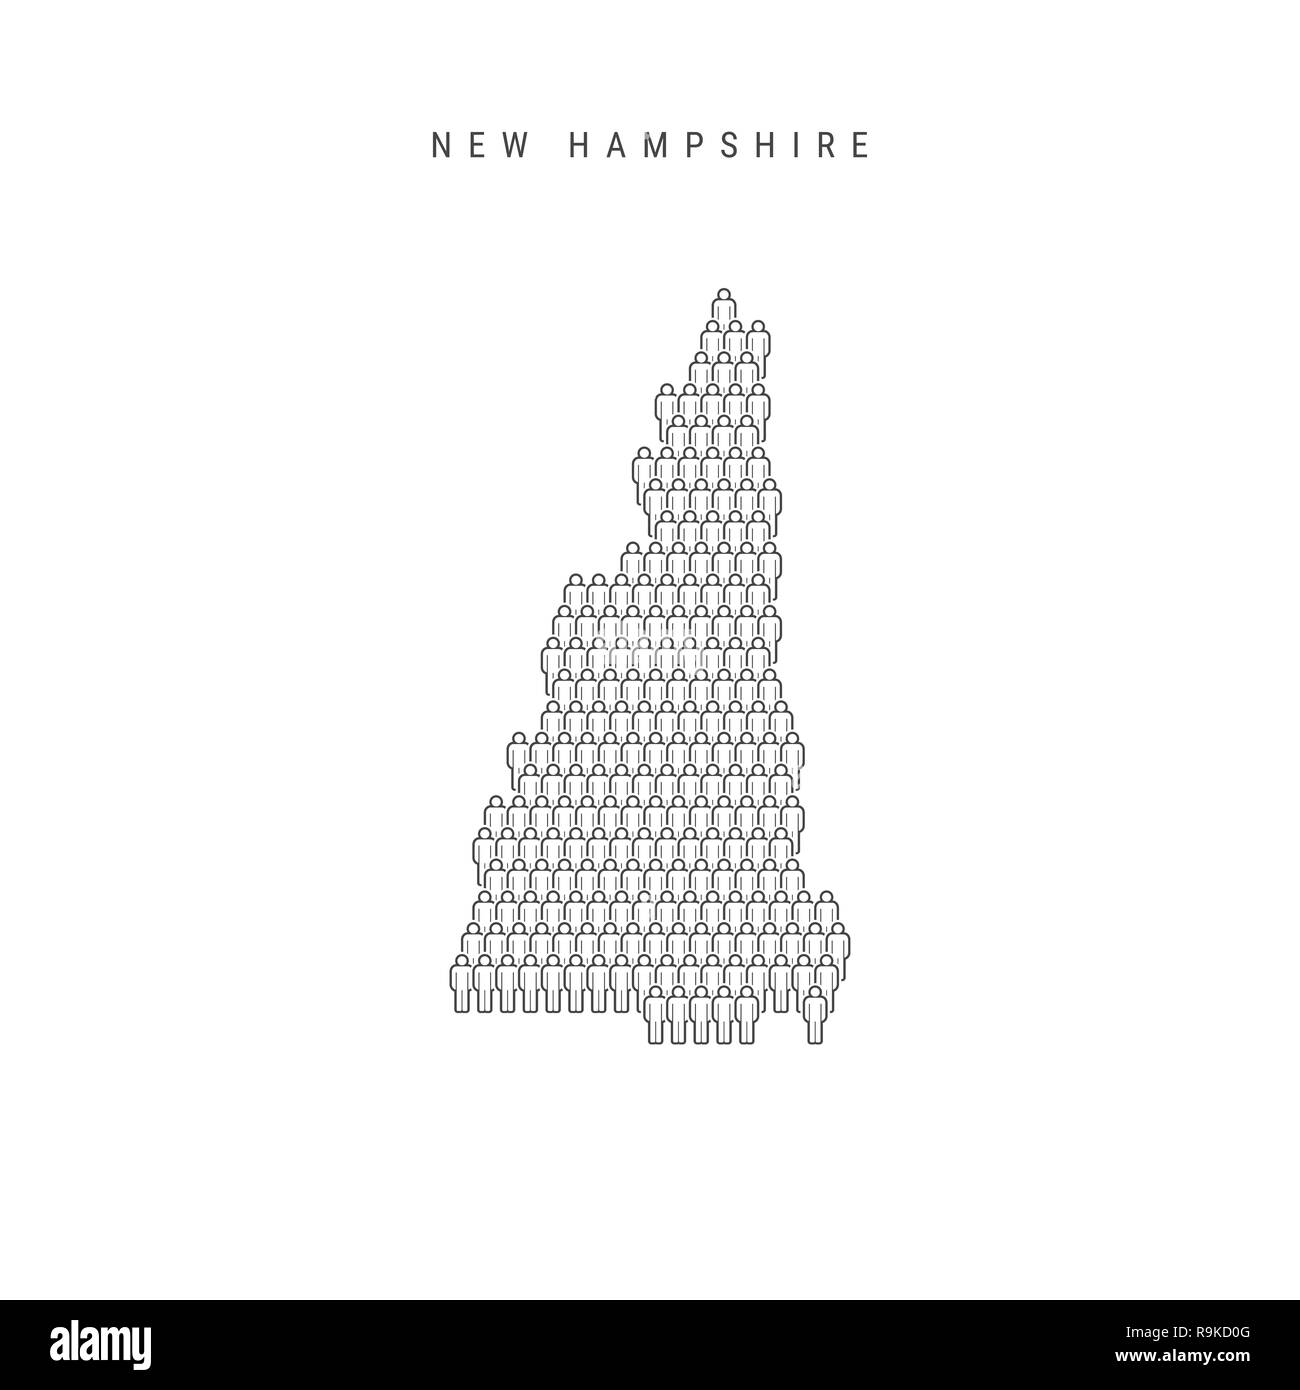 Leute Karte von New Hampshire, USA. Stilisierte Silhouette, Leute in der Form einer Karte von New Hampshire. New Hampshire Bevölkerung. Illustratio Stockfoto